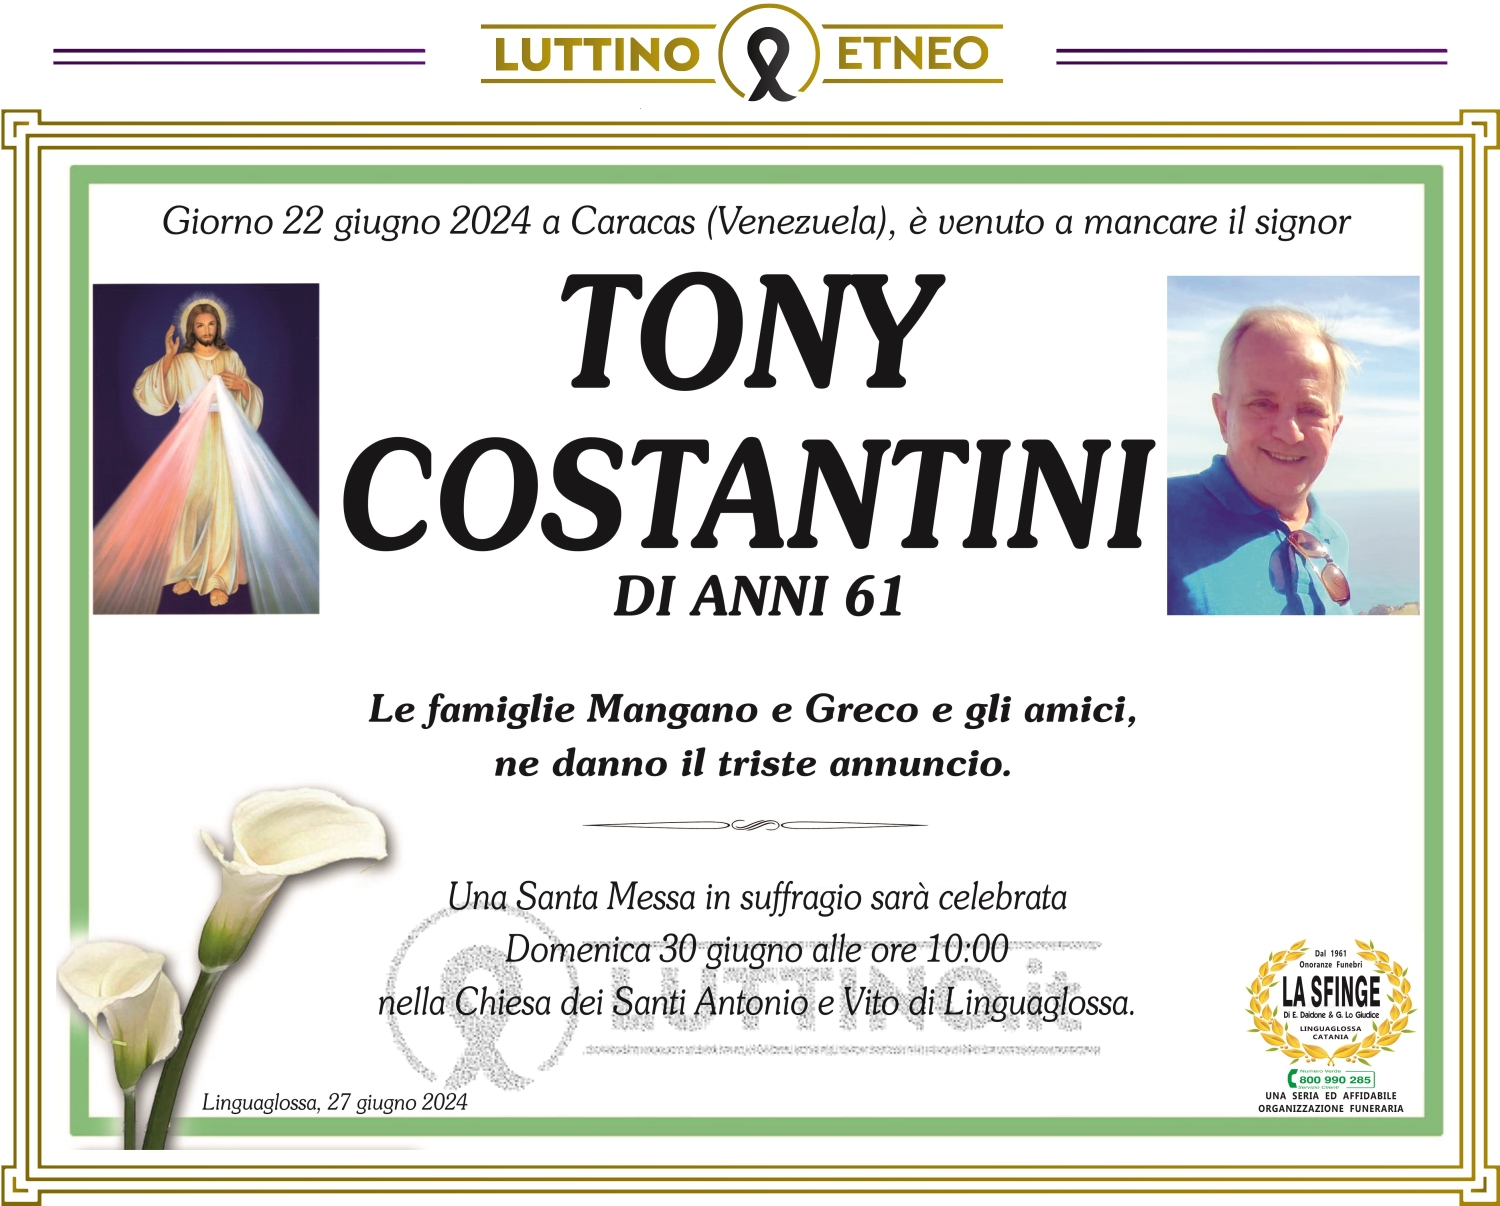 Tony Costantini